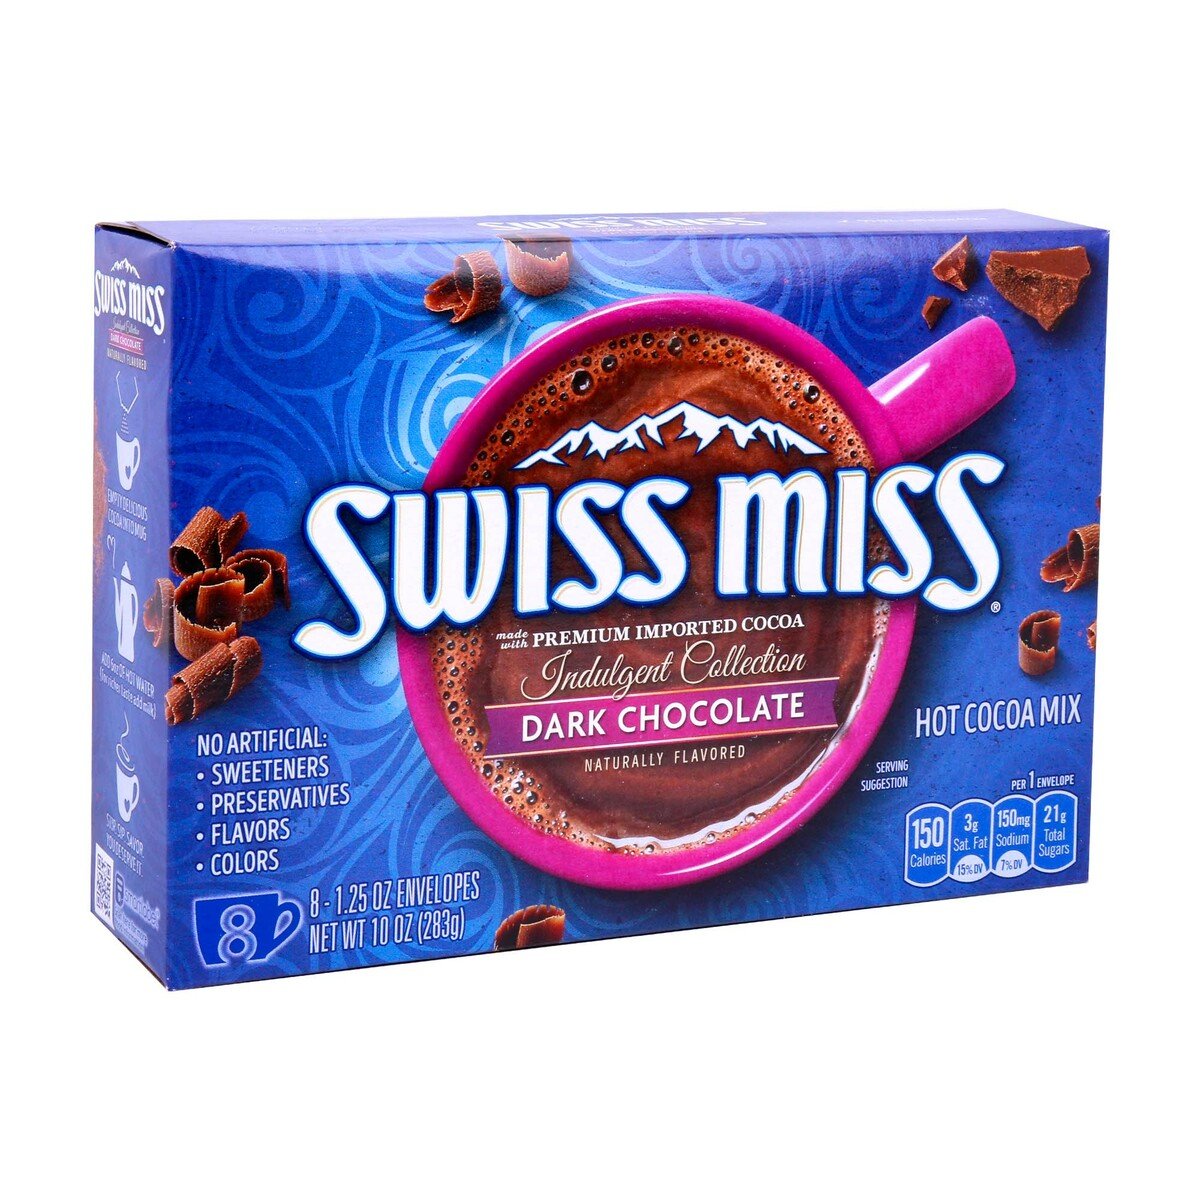 Swiss Miss Hot Cocoa Mix Dark Chocolate 283 g